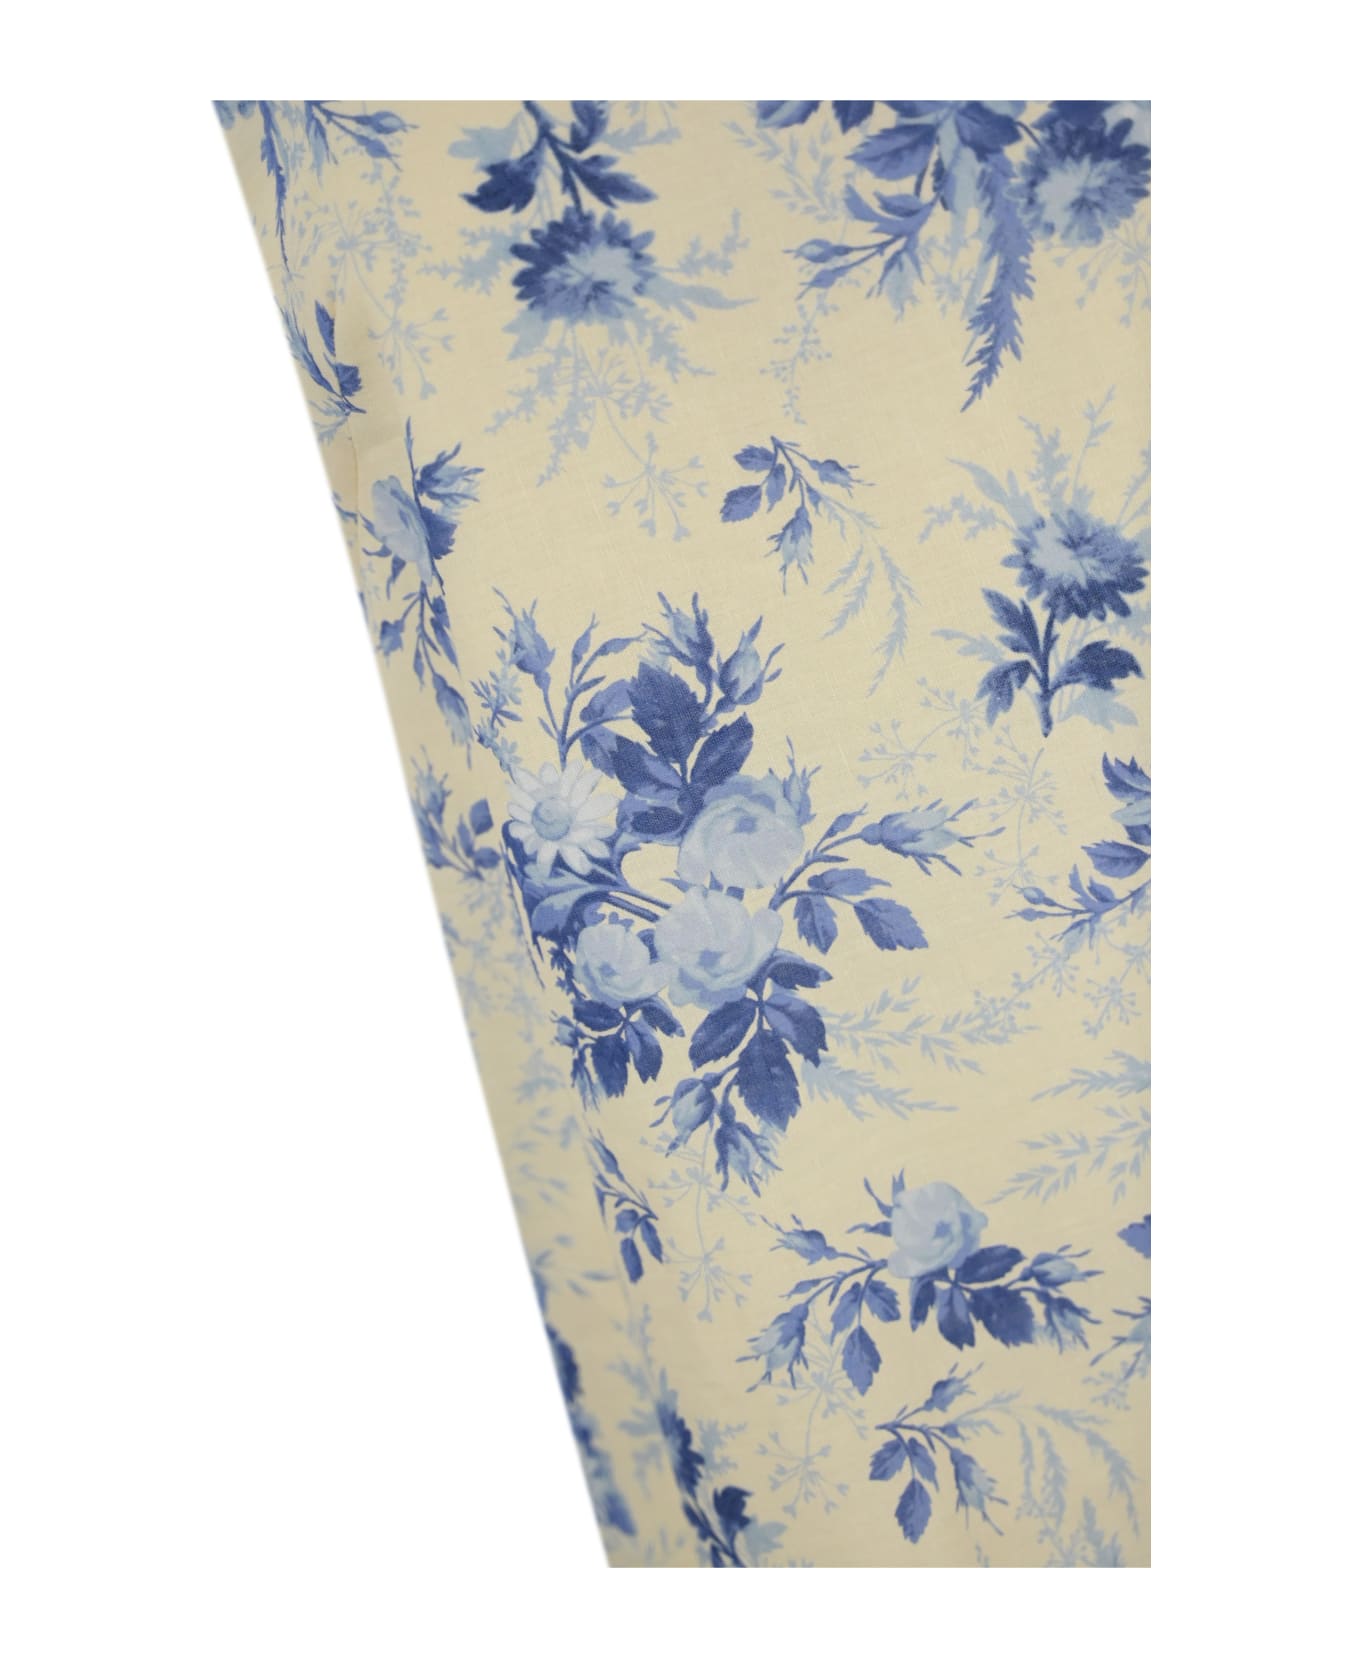 TwinSet Floral Print Linen Blend Dress - St.toile de jouy